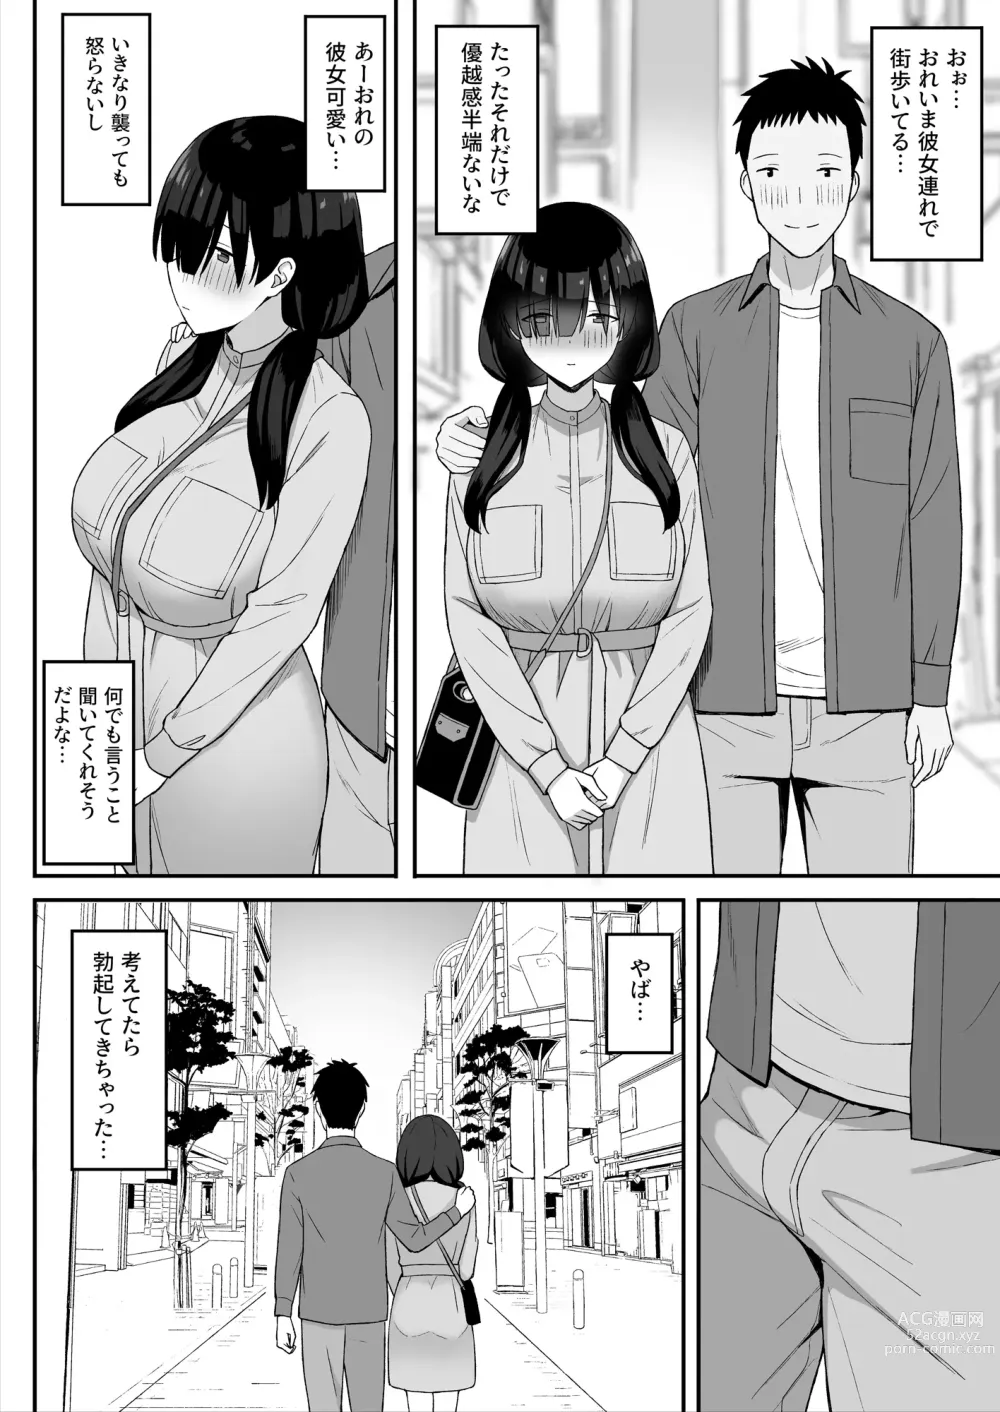 Page 28 of doujinshi 地味巨乳のストーカー女に告白されたのでヤりまくってみた話